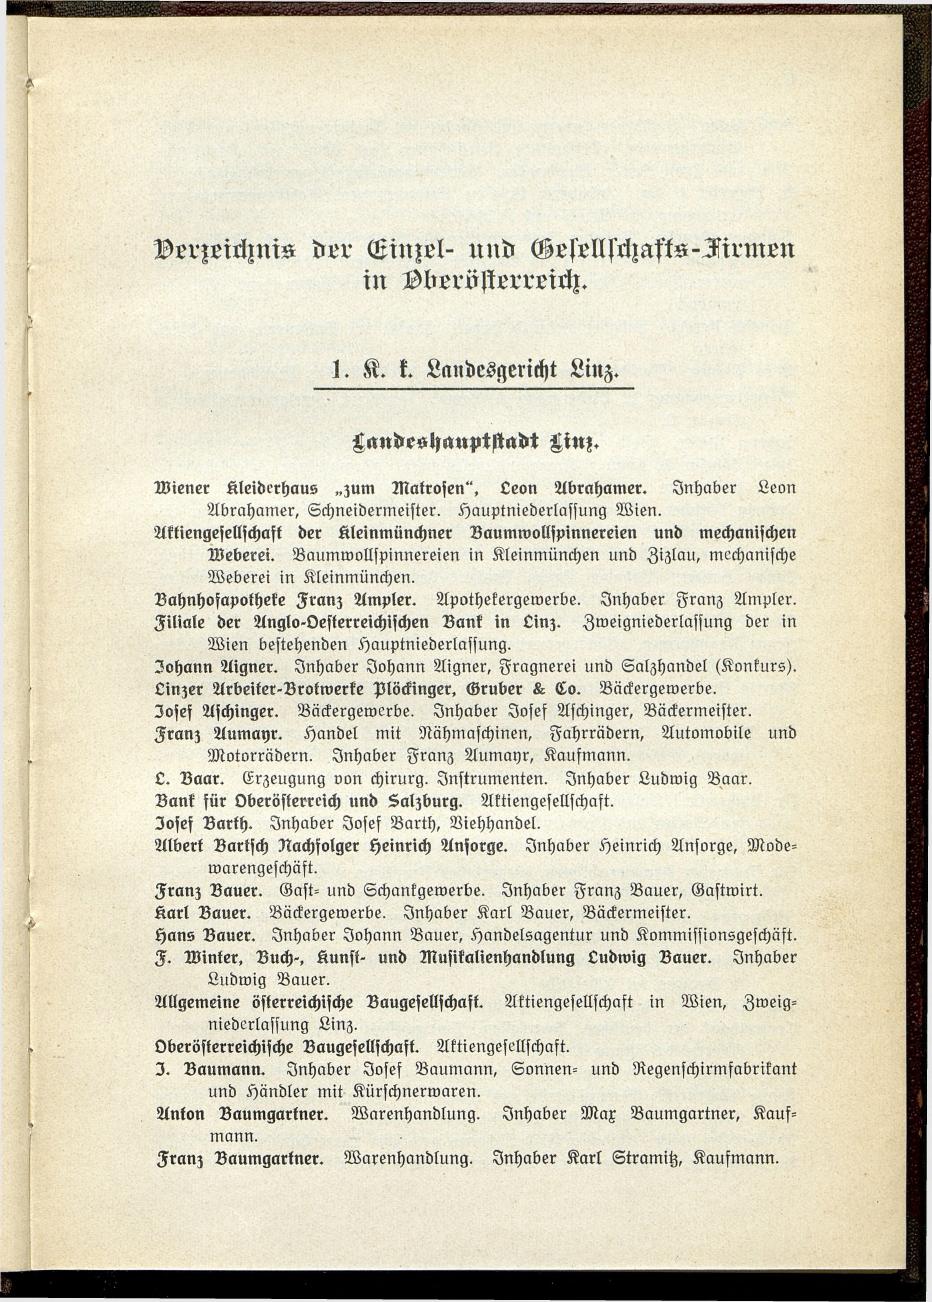 Verzeichnis der handelsgerichtlich protokollierten Firmen sowie der registrierten Erwerbs- und Wirtschafts-Genossenschaften in Oberösterreich 1914 - Page 7